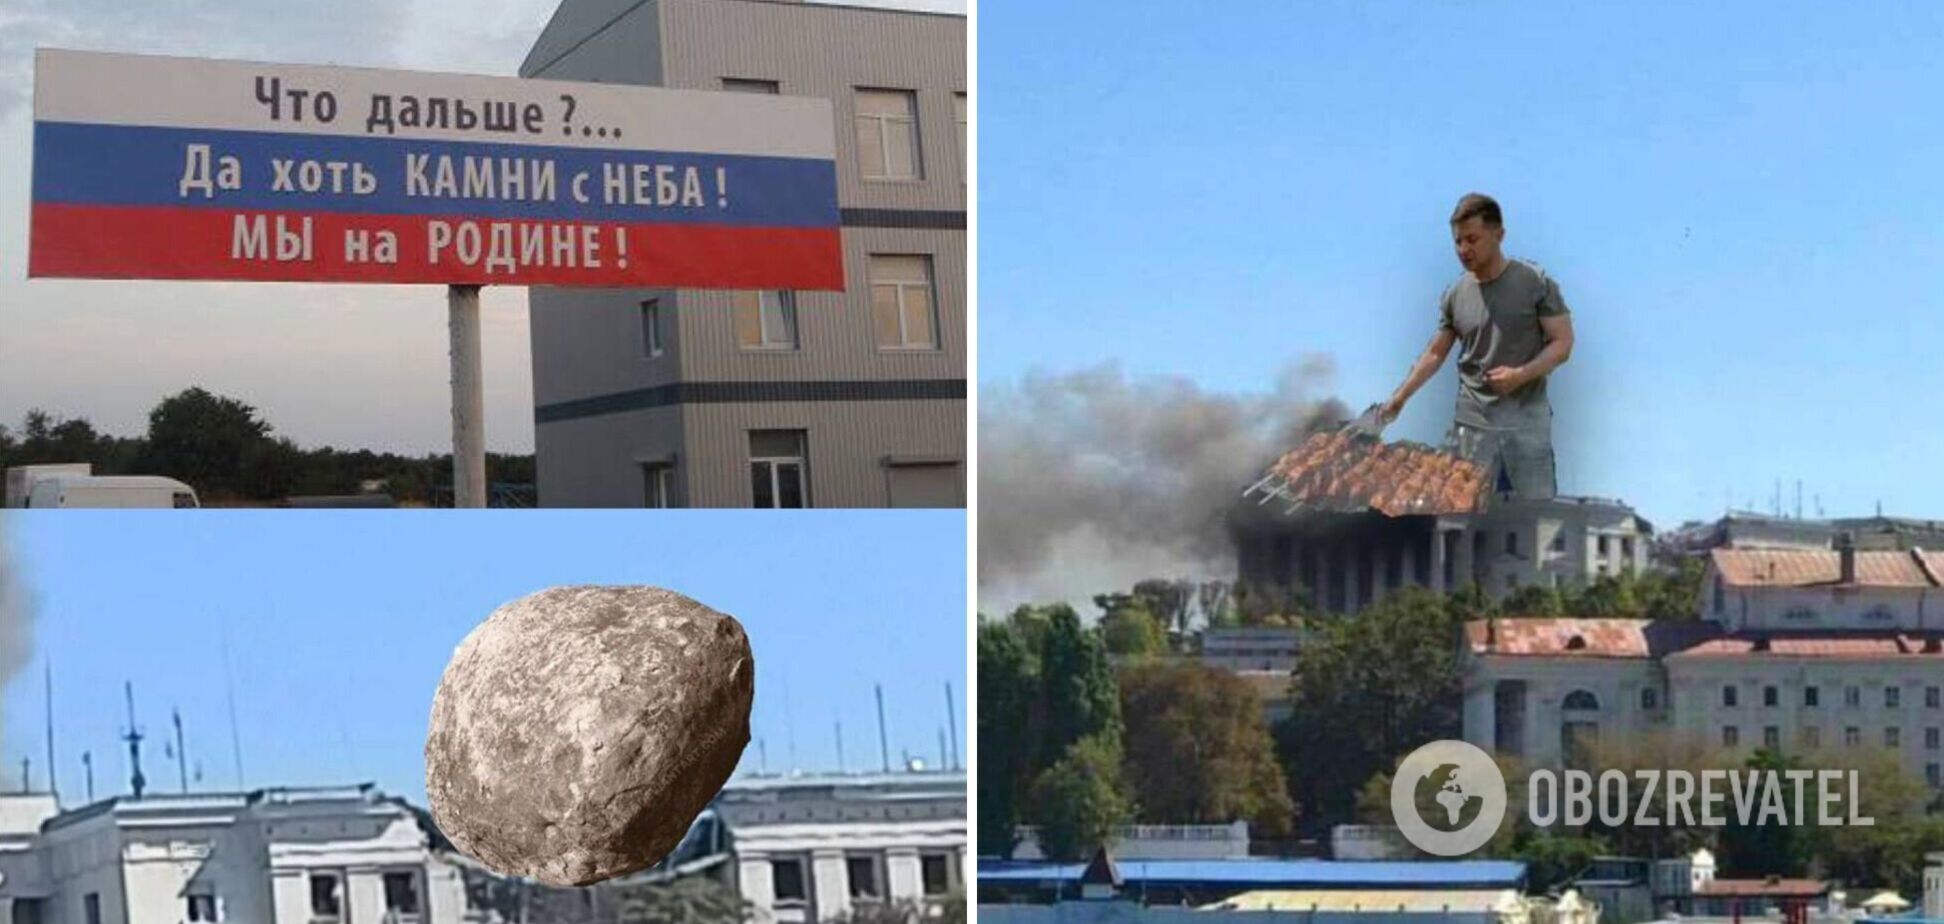 'Началось': сеть разразилась шутками и мемами после удара по штабу ЧФ РФ в Крыму